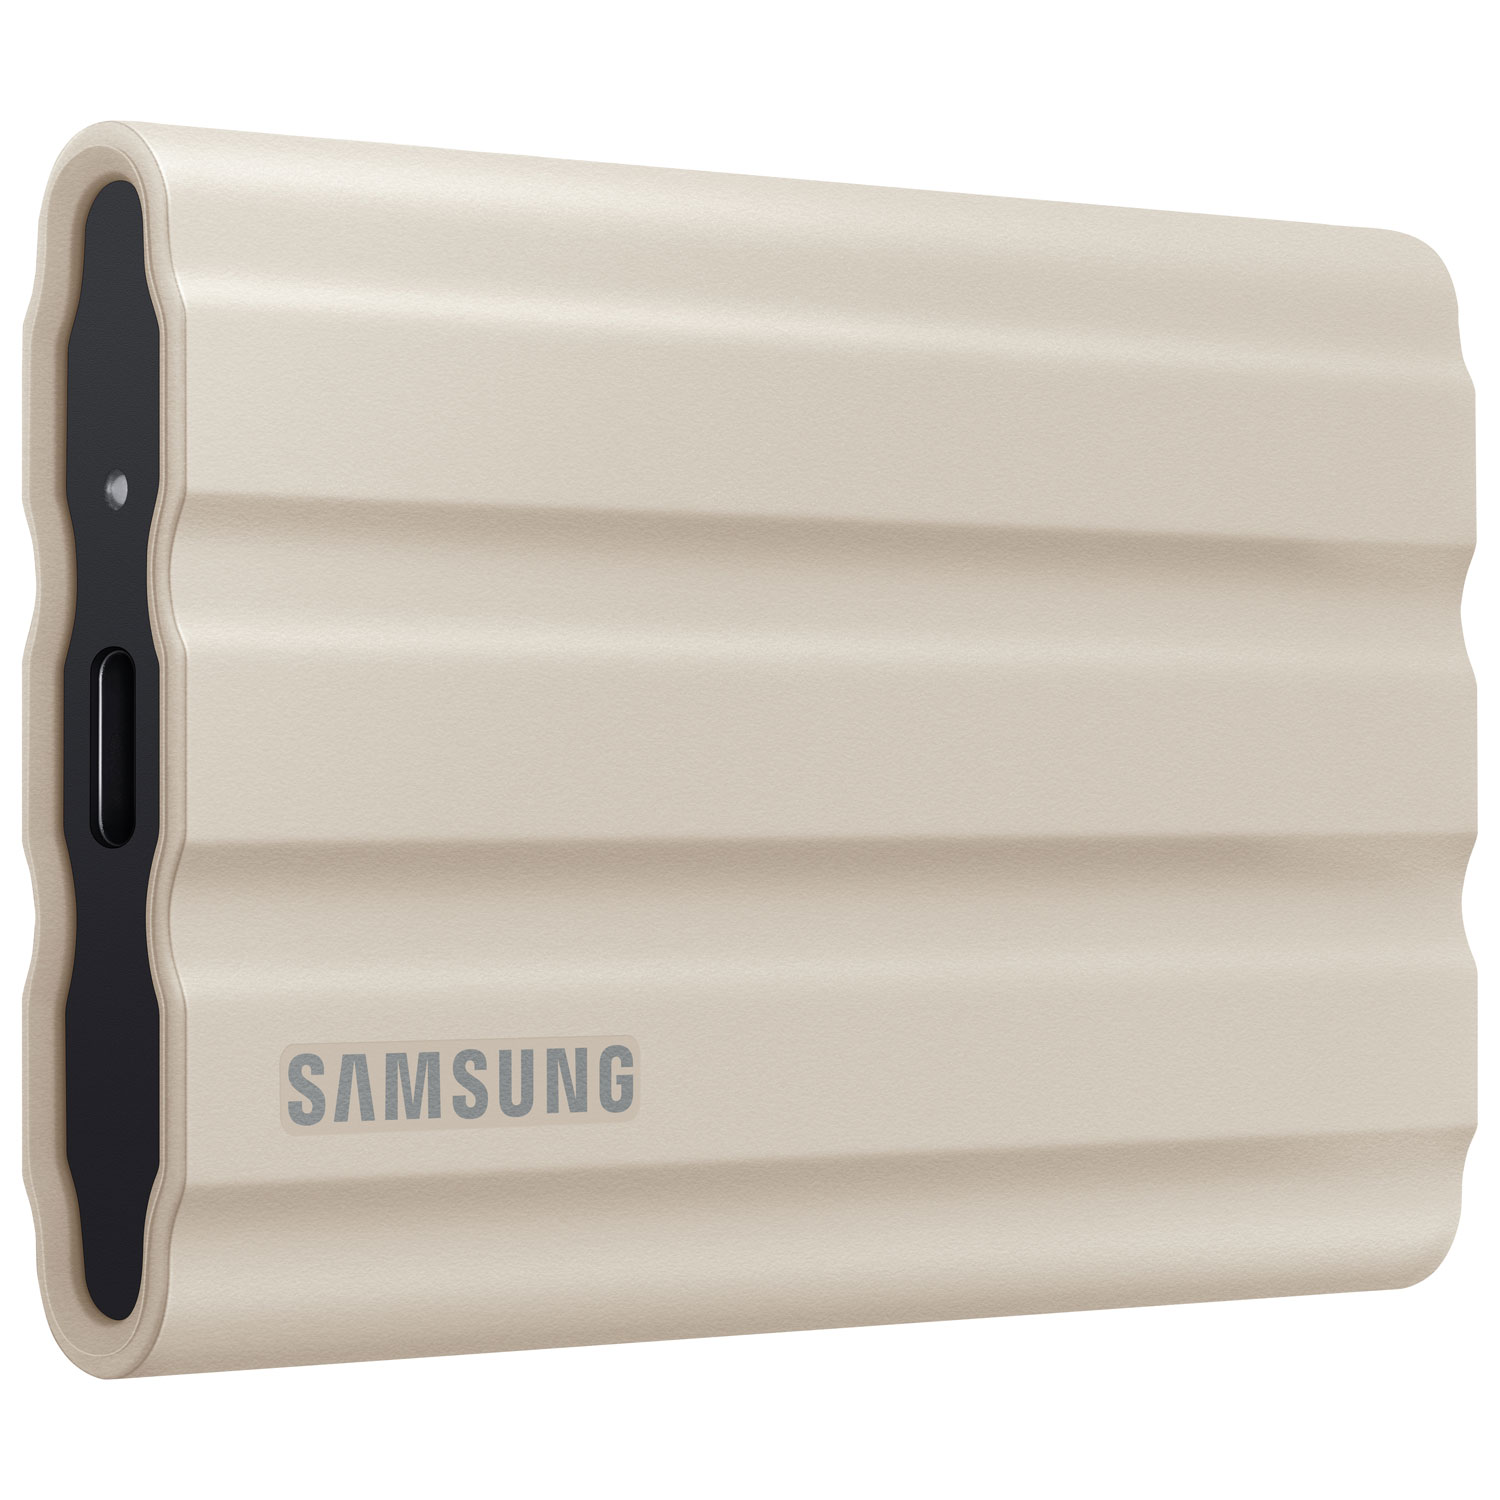 Samsung T7 Shield 2TB USB 3.2 External Solid State Drive (MU-PE2T0K/AM) - Beige